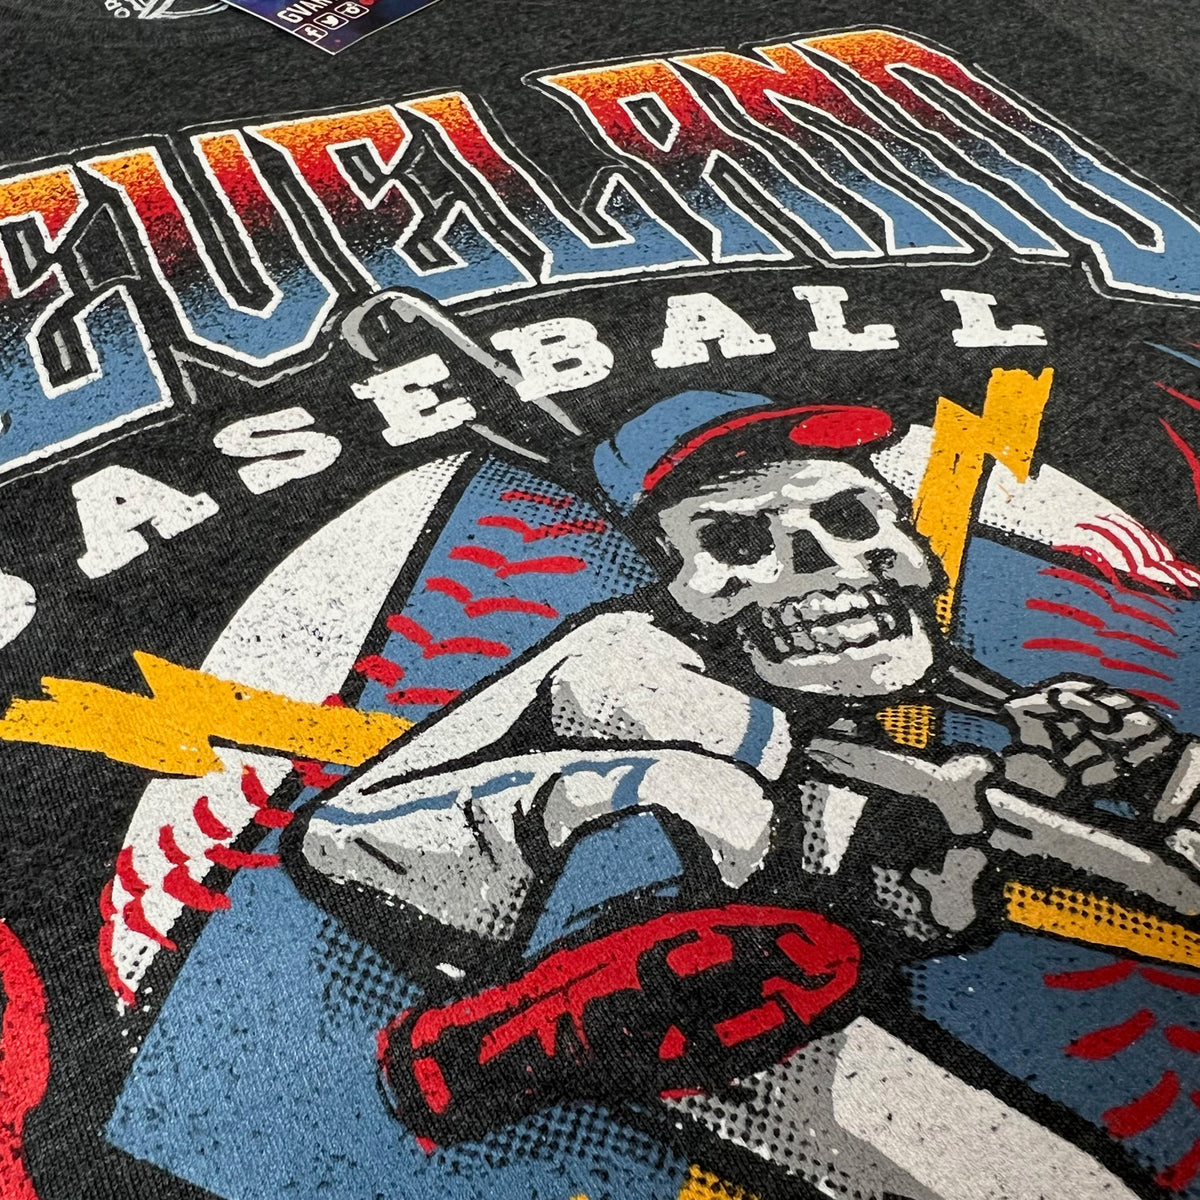 Grateful Dead Cleveland Baseball shirt - Yeswefollow